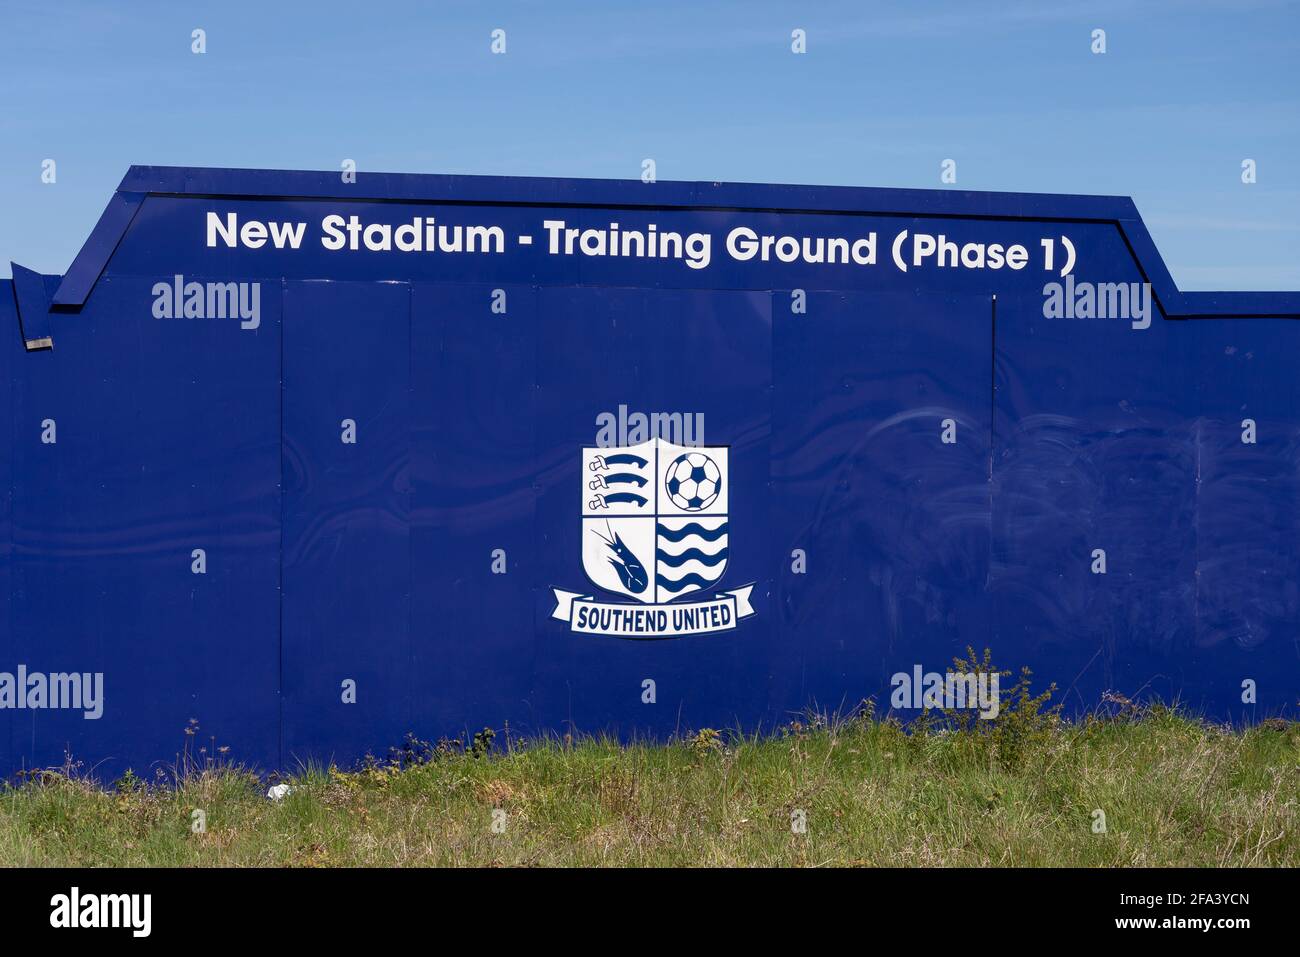 Chantier de construction de palissades autour de la proposition de Southend Utd football club nouveau terrain d'entraînement de stade à Fossetts Way, Fossetts Farm. Phase 1 de la formation Banque D'Images